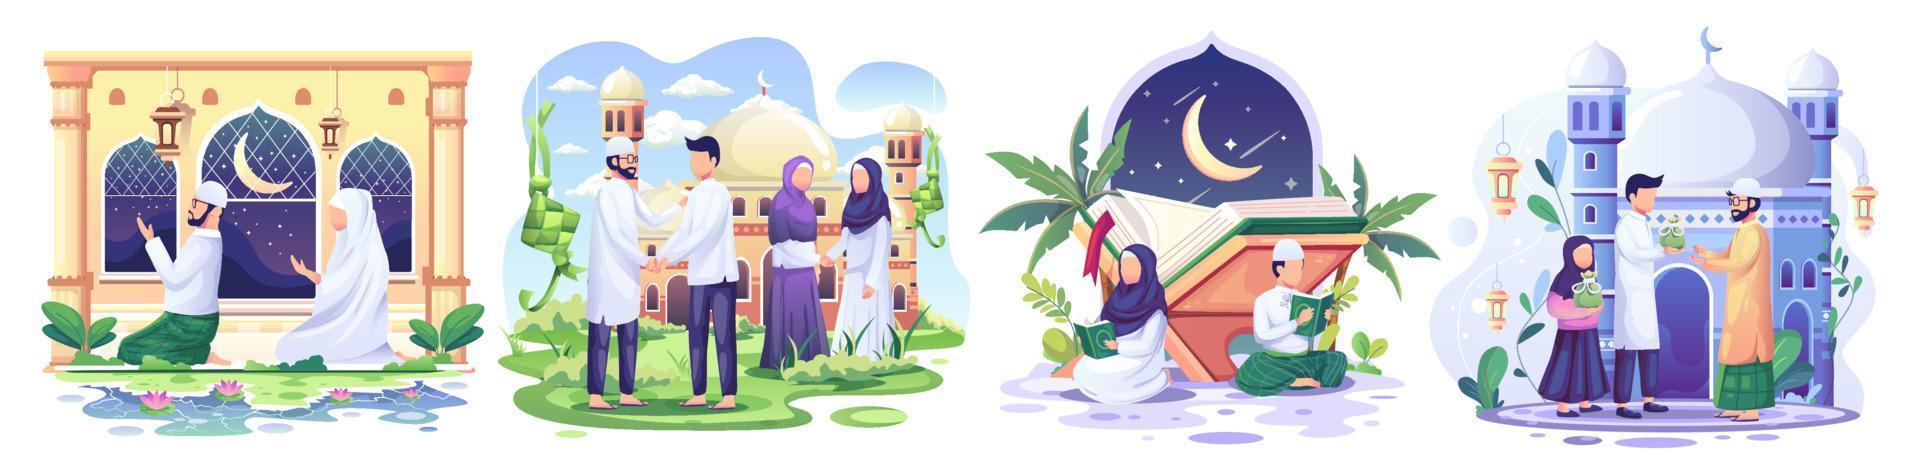 set van ramadan concept illustratie. gelukkige moslimmensen vieren heilige maand ramadan, lezen koran, zakat liefdadigheid, eid mubarak-groet. vector illustratie